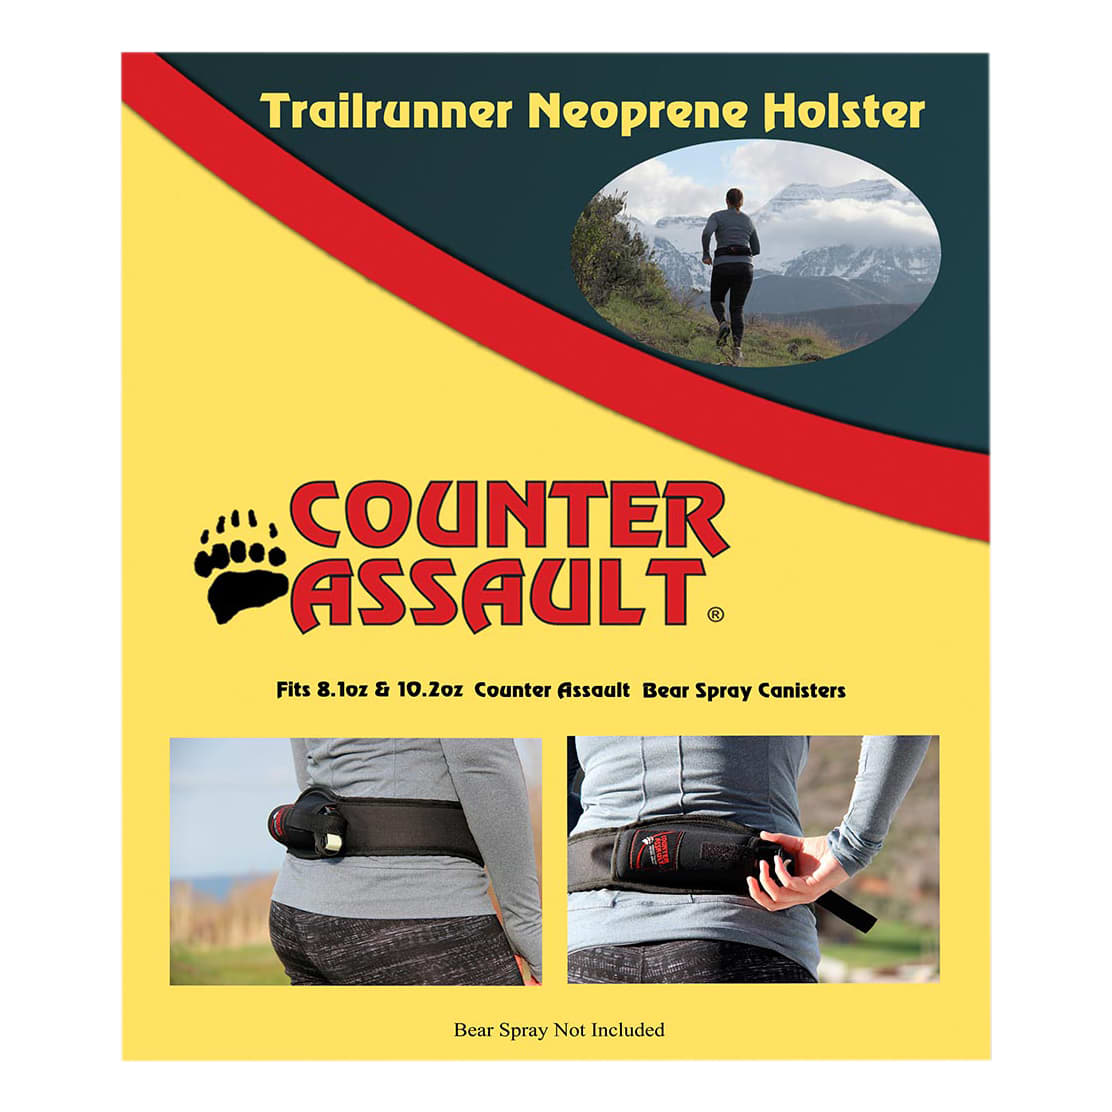 Counter Assault Trail Runner Neoprene Holster